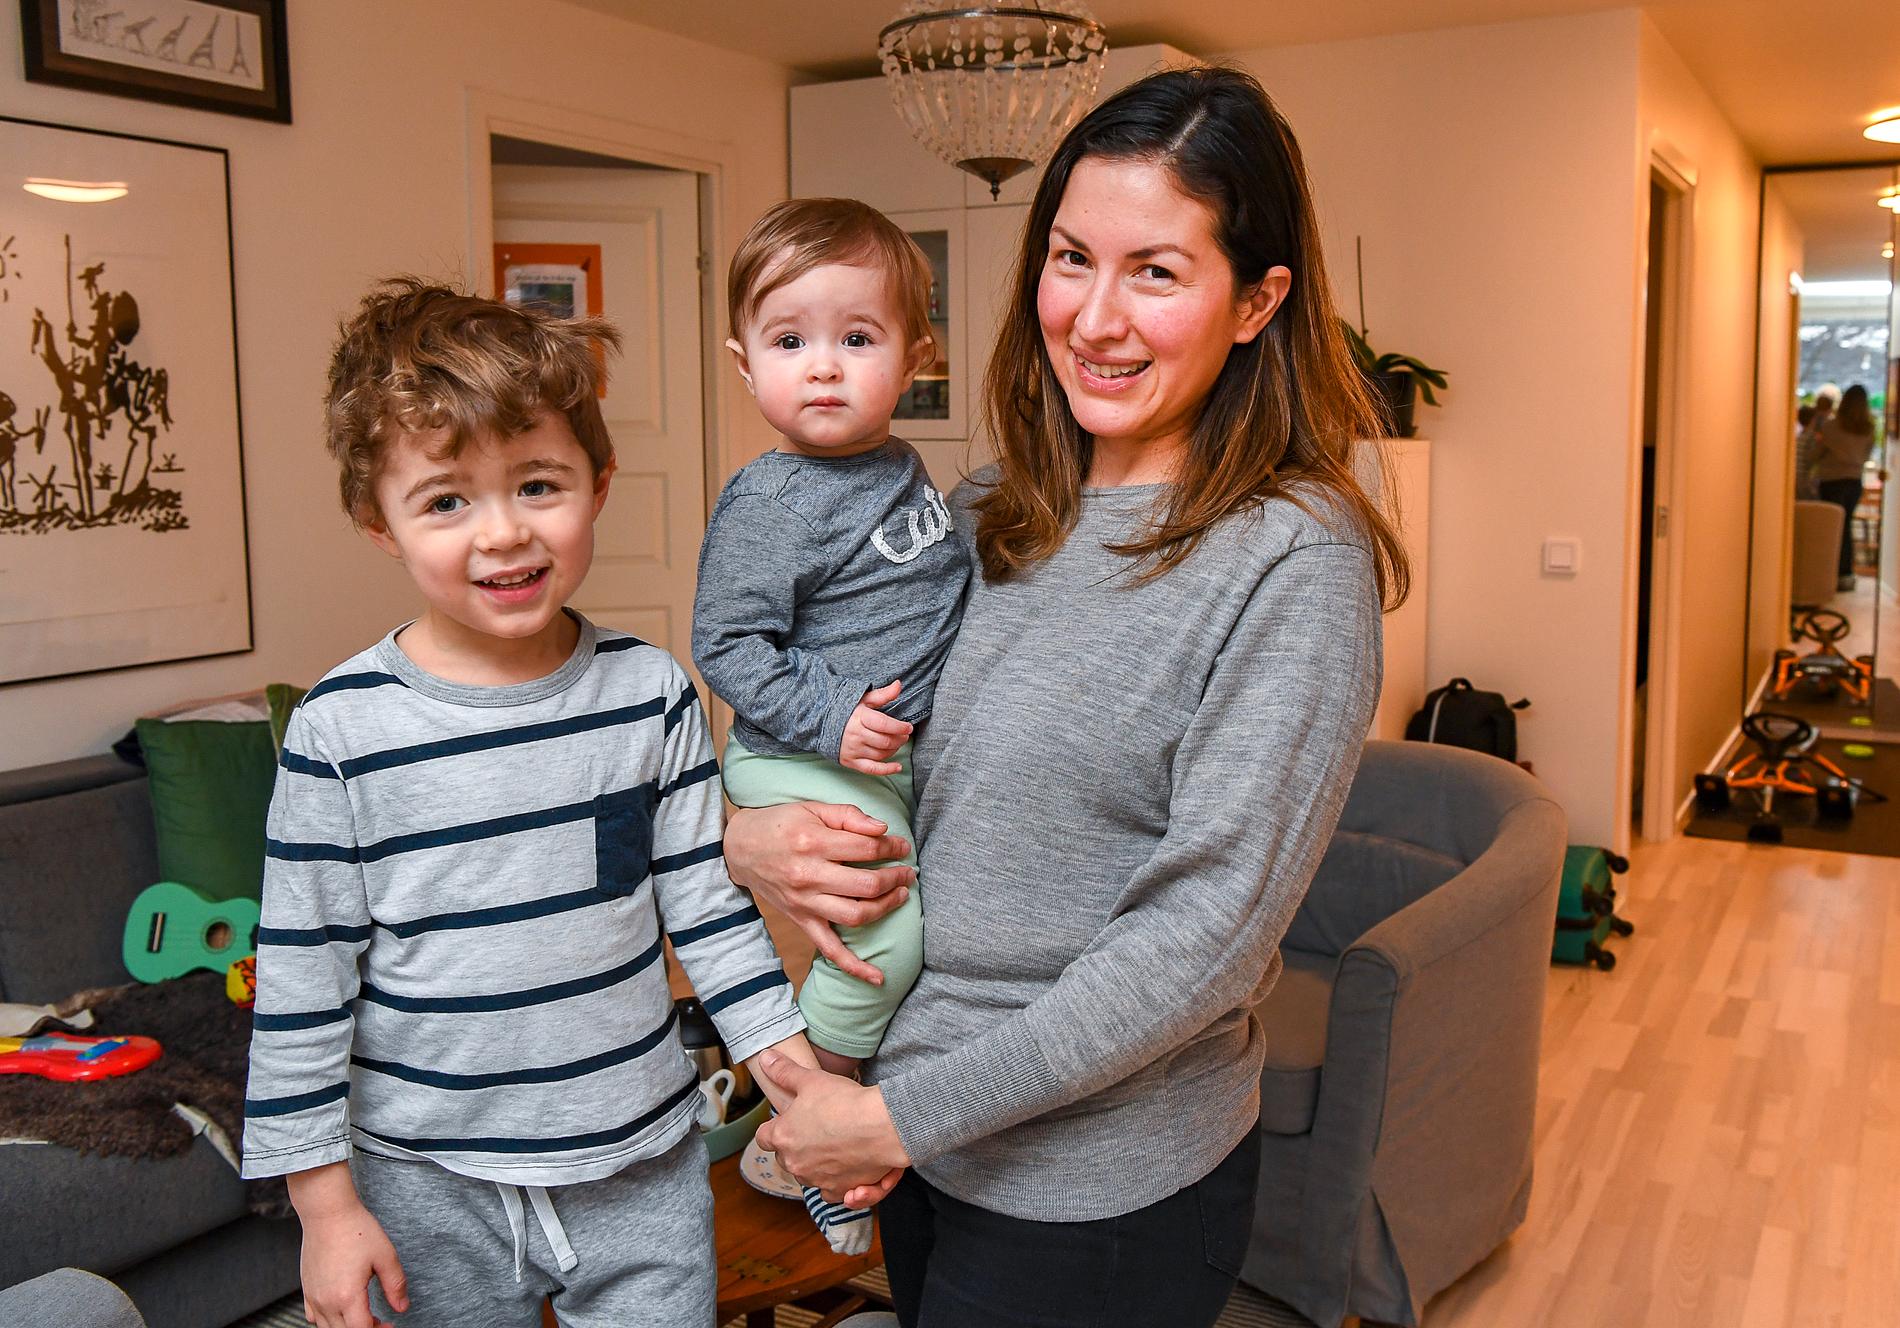 Wuendy Cardenas hoppas snart kunna åka till hemlandet Venezuela tillsammans med barnen Iker Håkansson, fyra år, och Luana Håkansson, snart ett år.